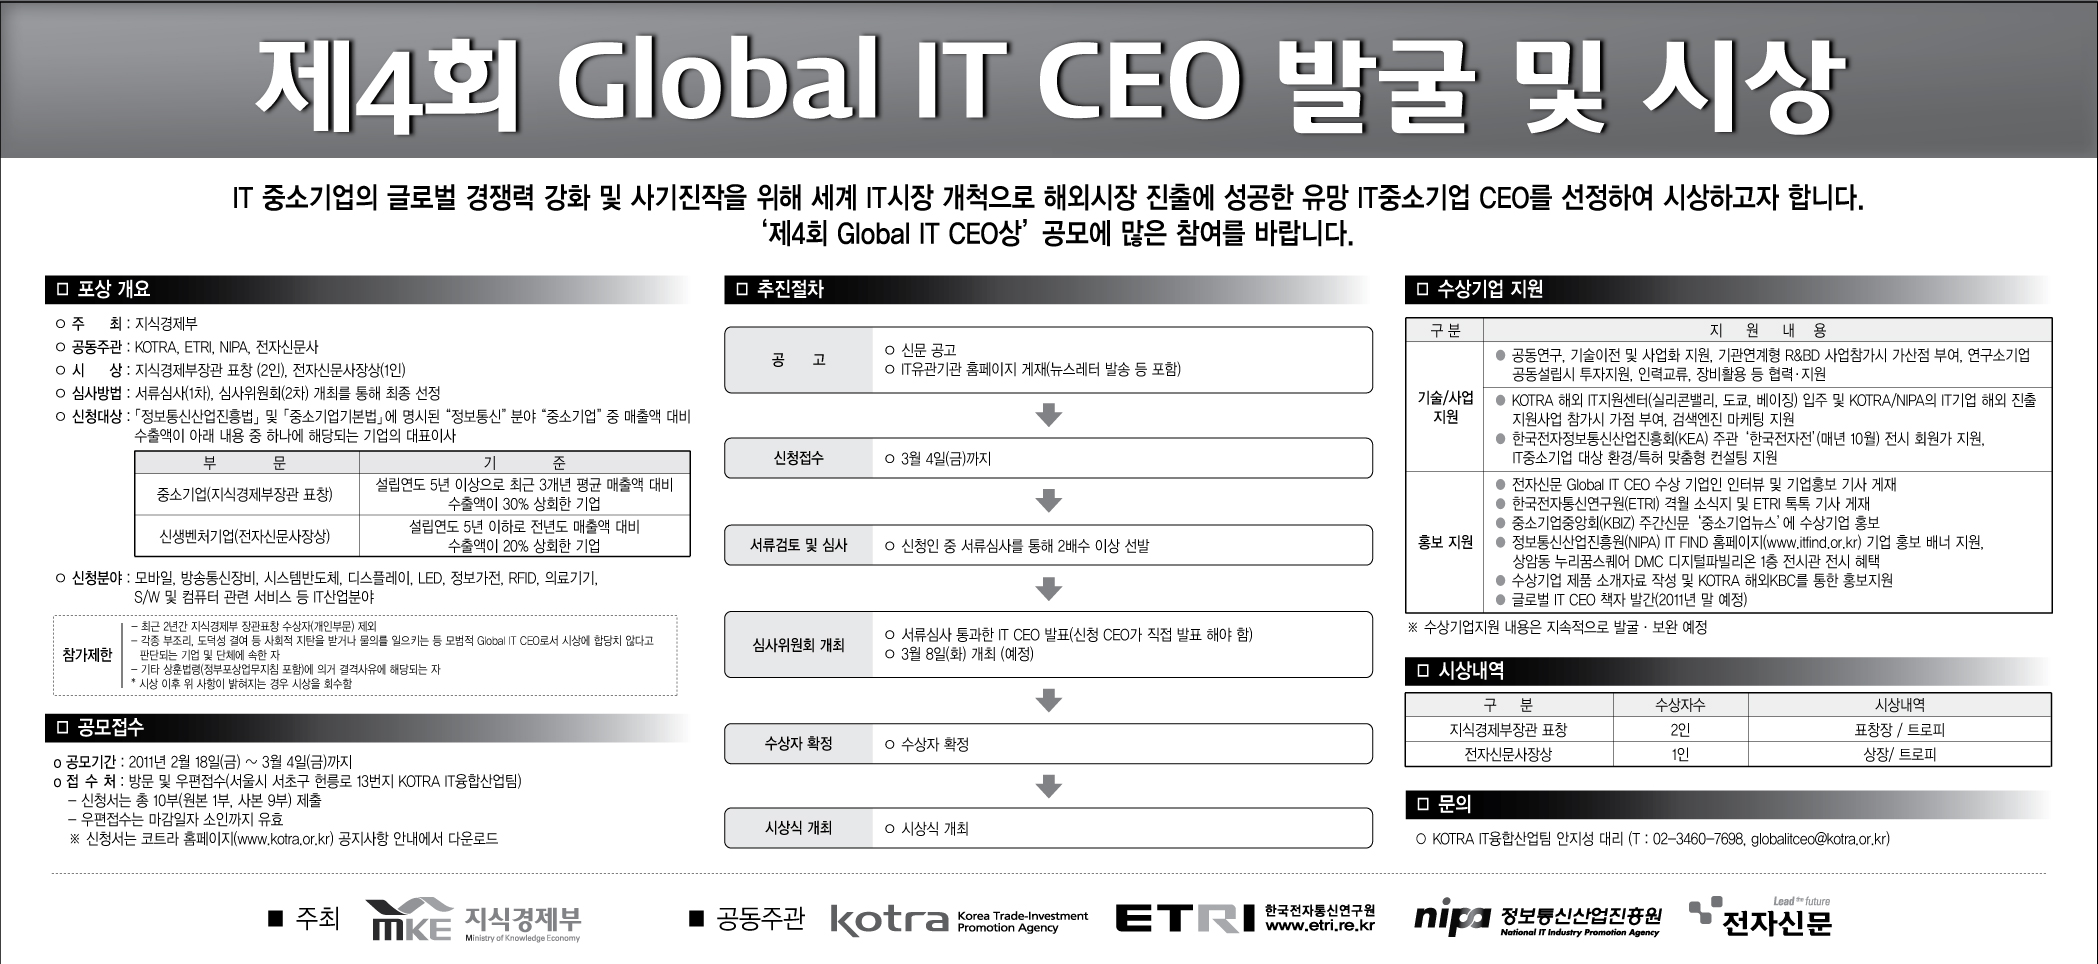 제4회 글로벌 IT CEO 발굴 및 시상 [이미지]